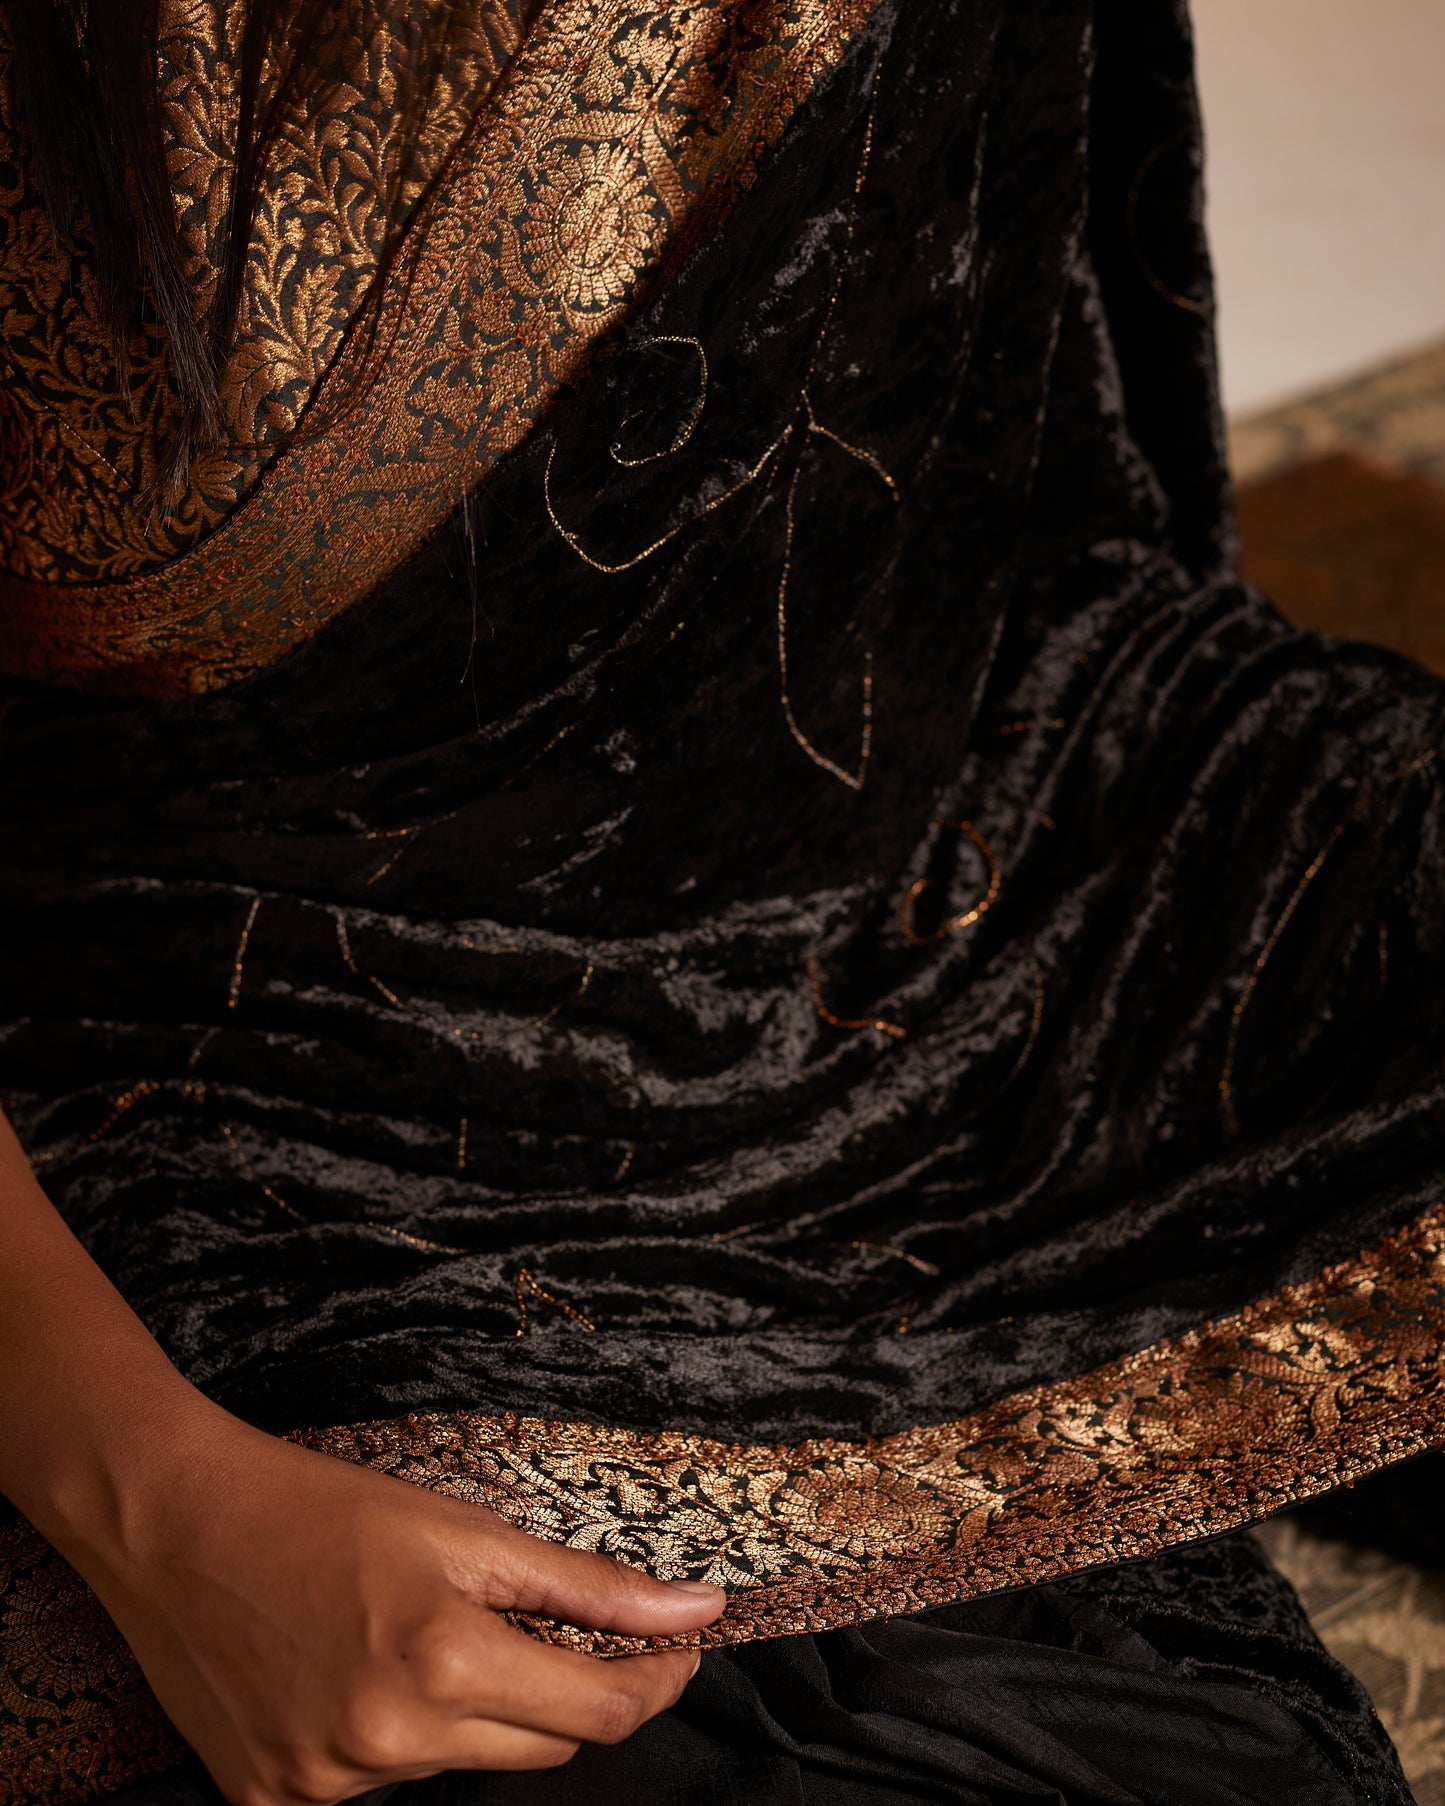 Sari in Black Velvet